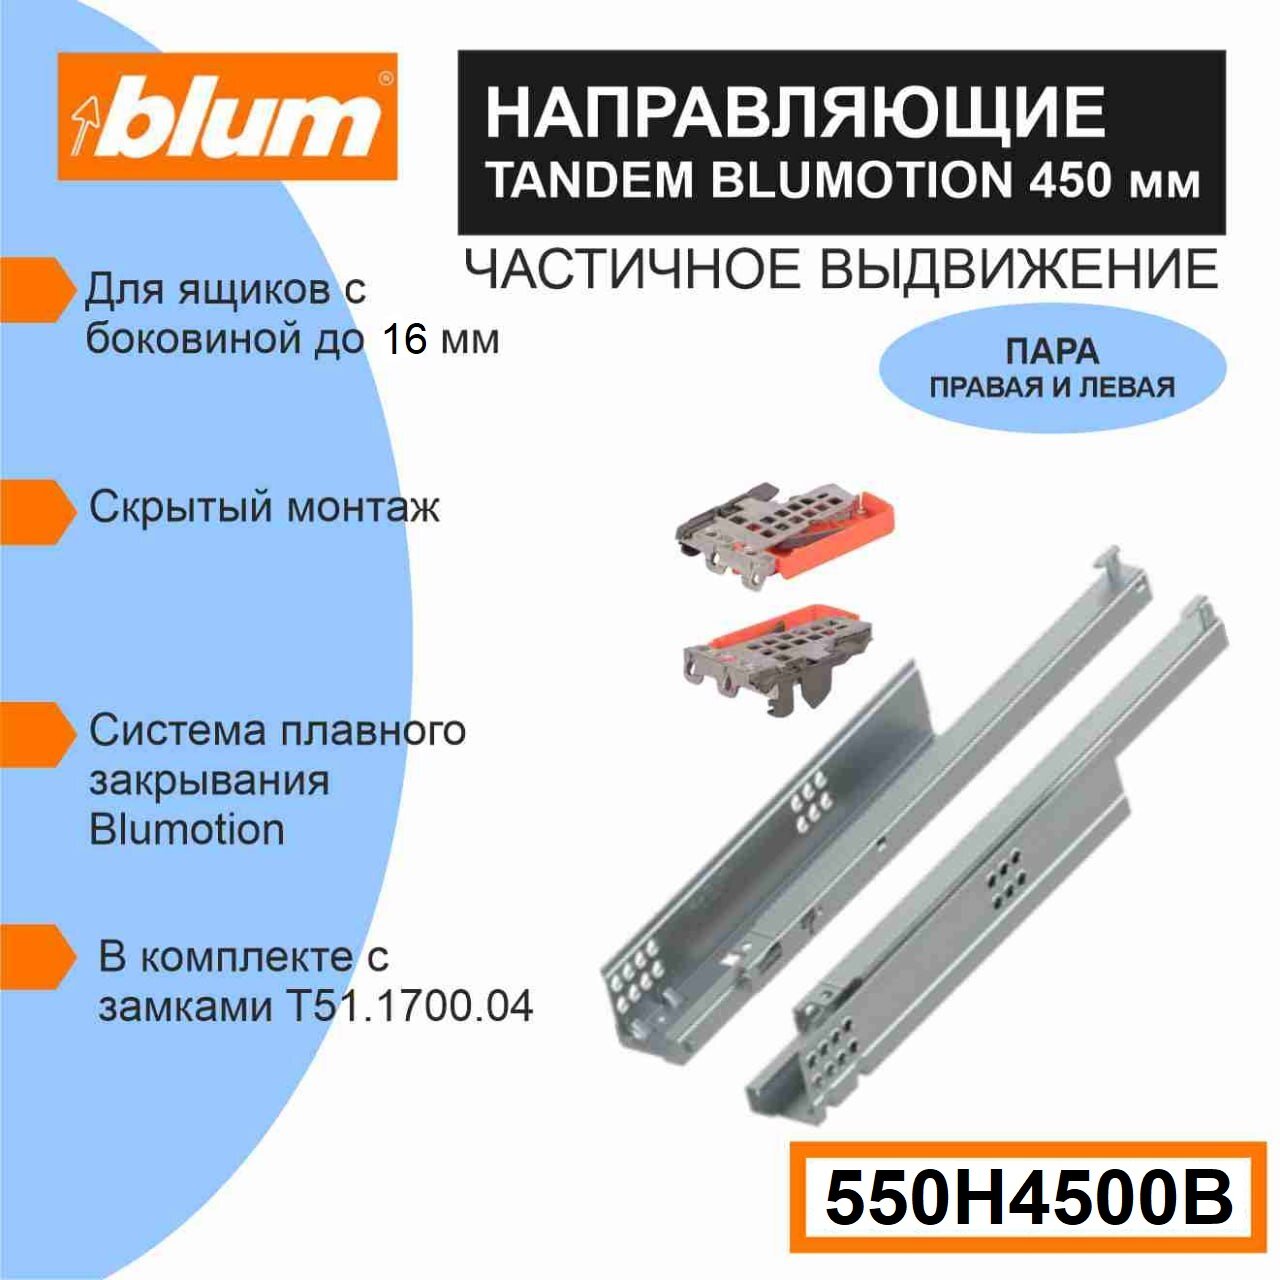 Направляющие скрытого монтажа BLUM TANDEM 550H4500B для ящиков с боковиной до 16 мм, 30кг, 1 комплект